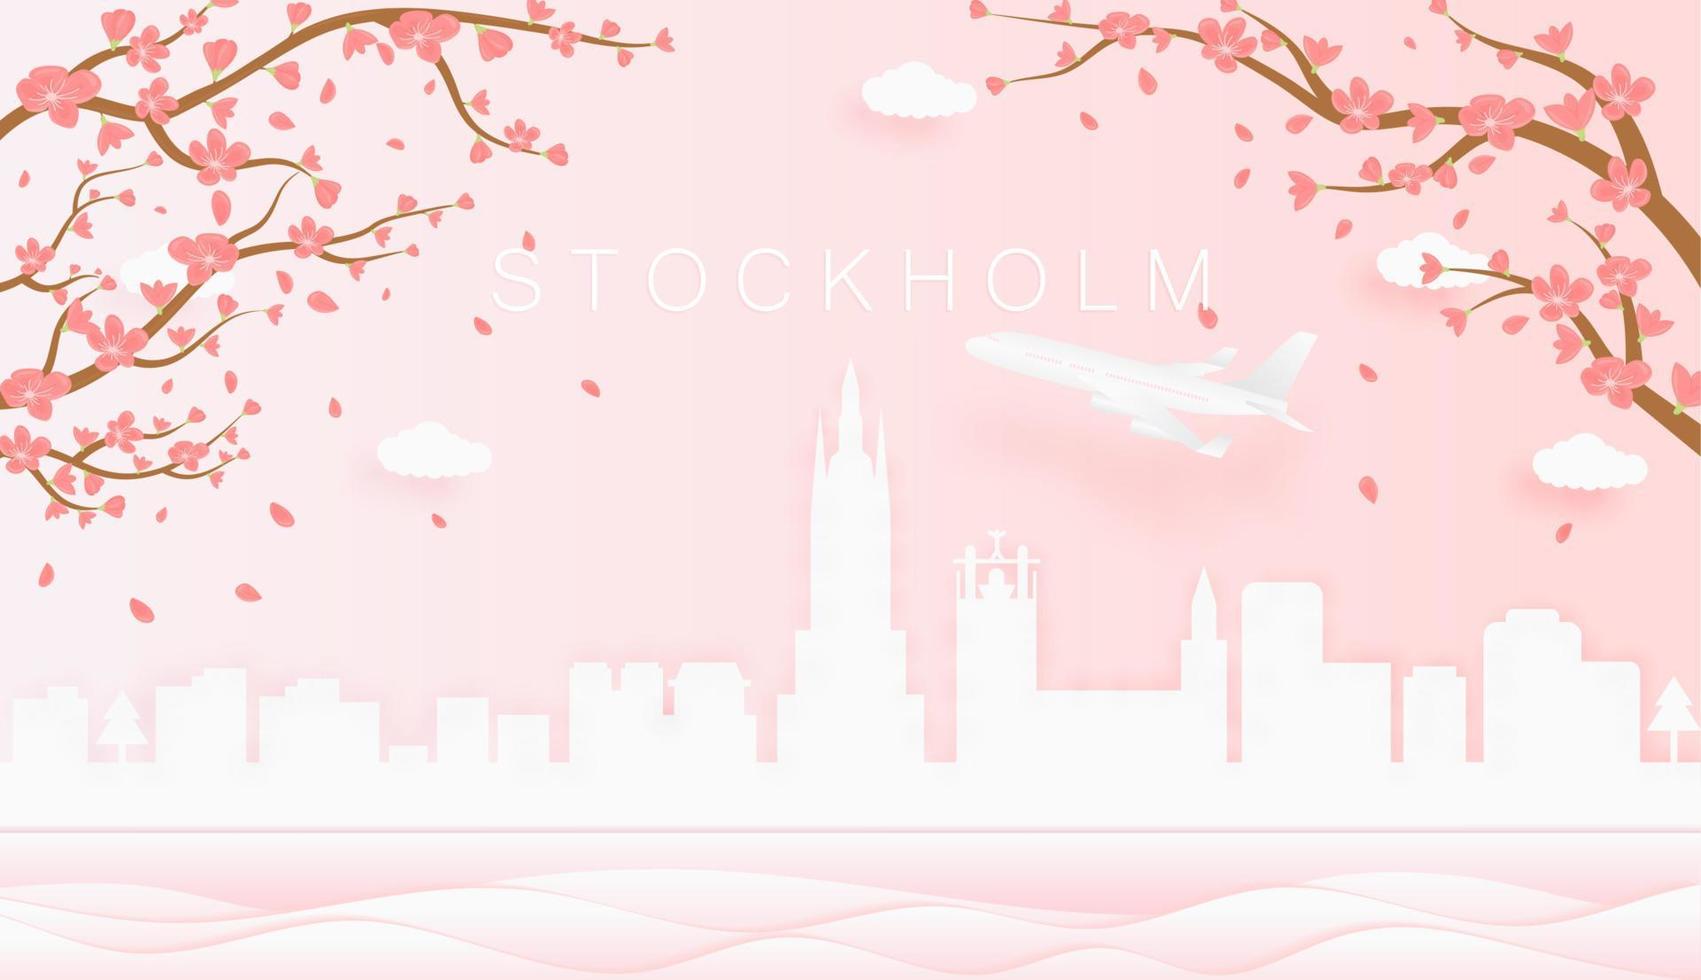 Panorama Reise Postkarte, Poster, Tour Werbung von Welt berühmt Sehenswürdigkeiten von Stockholm, Frühling Jahreszeit mit Blühen Blumen im Baum im Papier Schnitt Stil Vektor Symbol